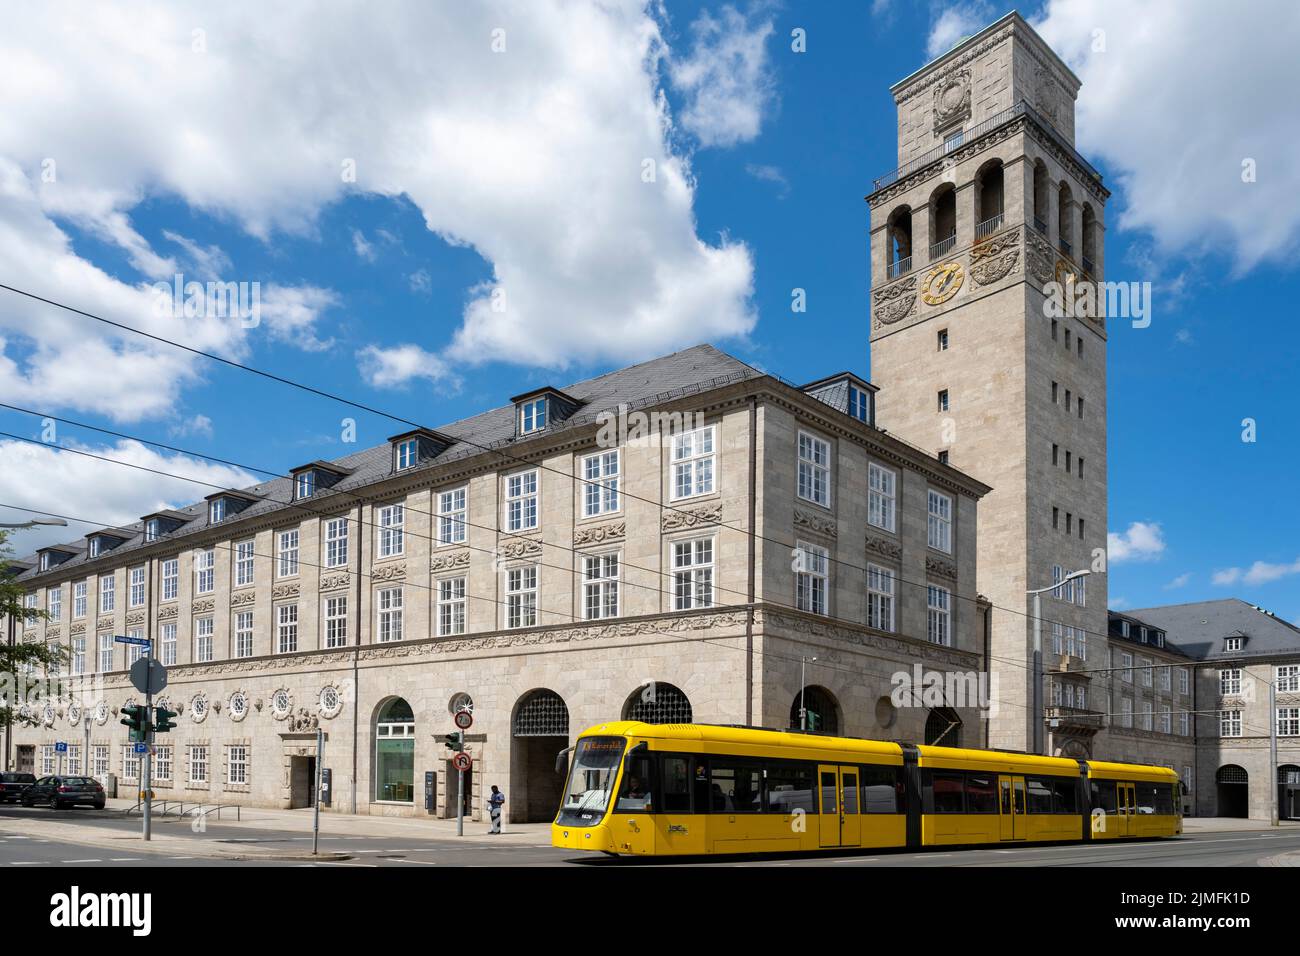 Alemania, Renania del Norte Westfalia, Mühlheim an der Ruhr, Historisches Rathaus Foto de stock